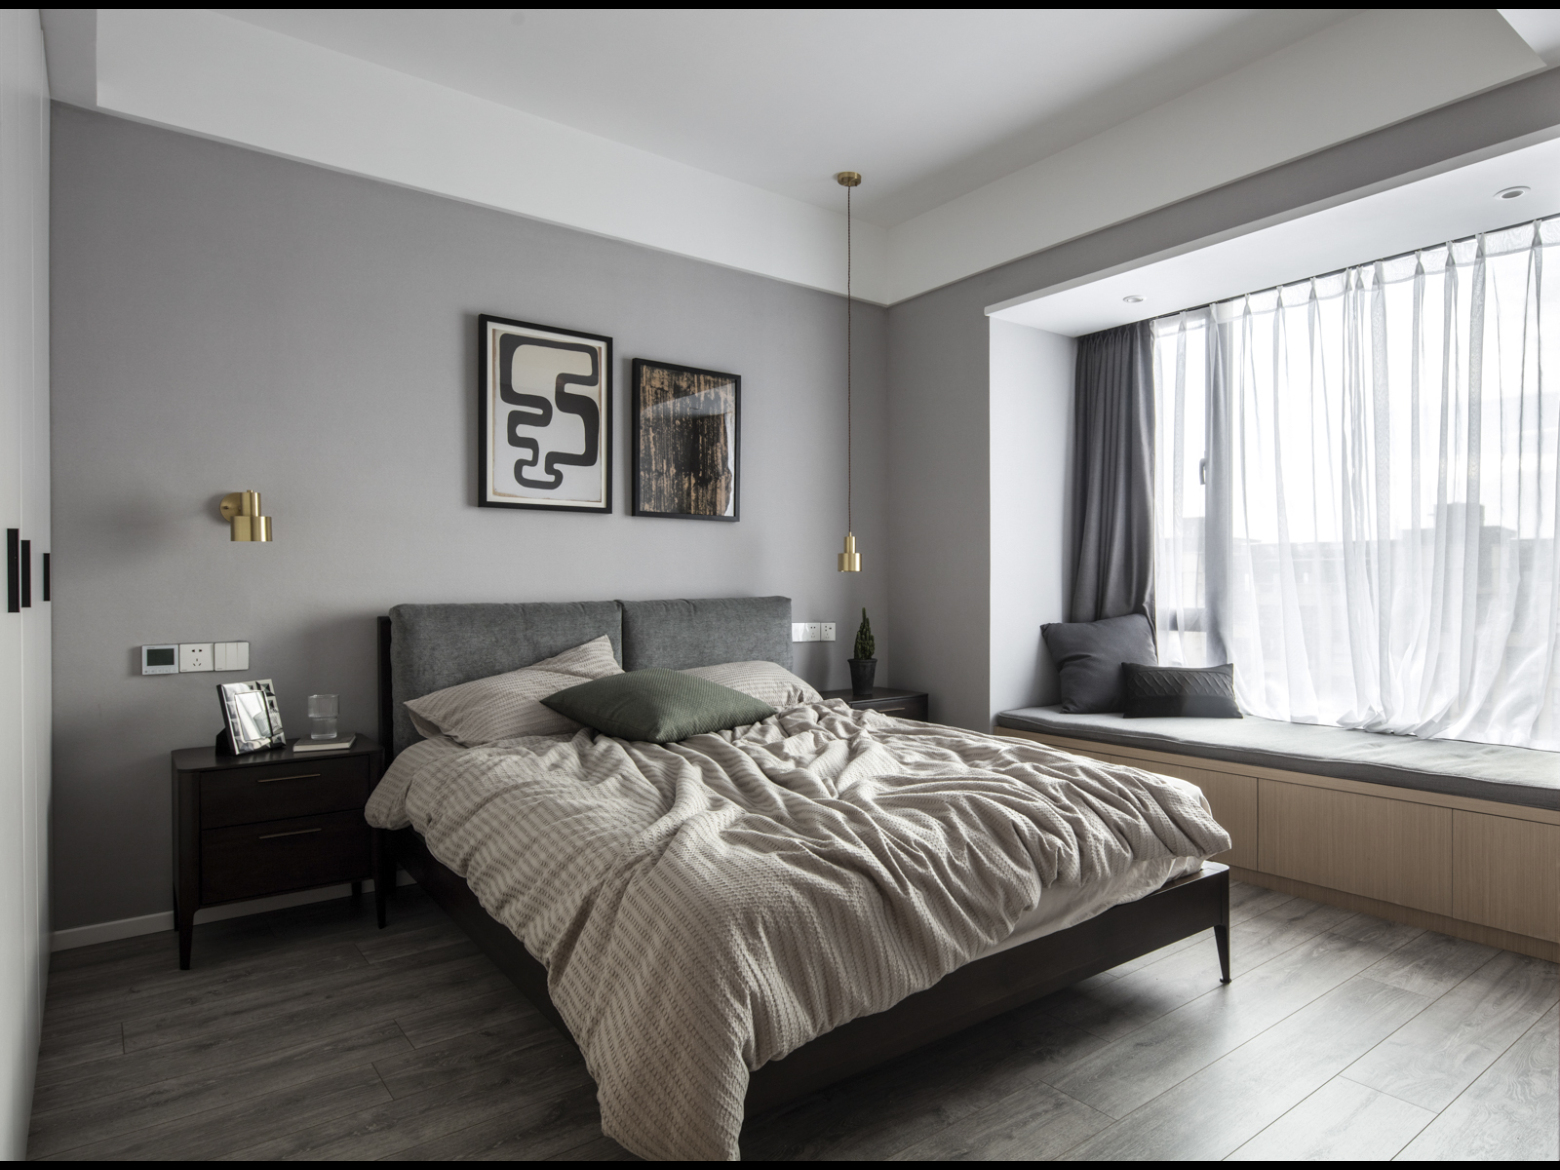 主卧床头背景选择两幅装饰画,背景用灰色乳胶漆,让空间更加高级,床头